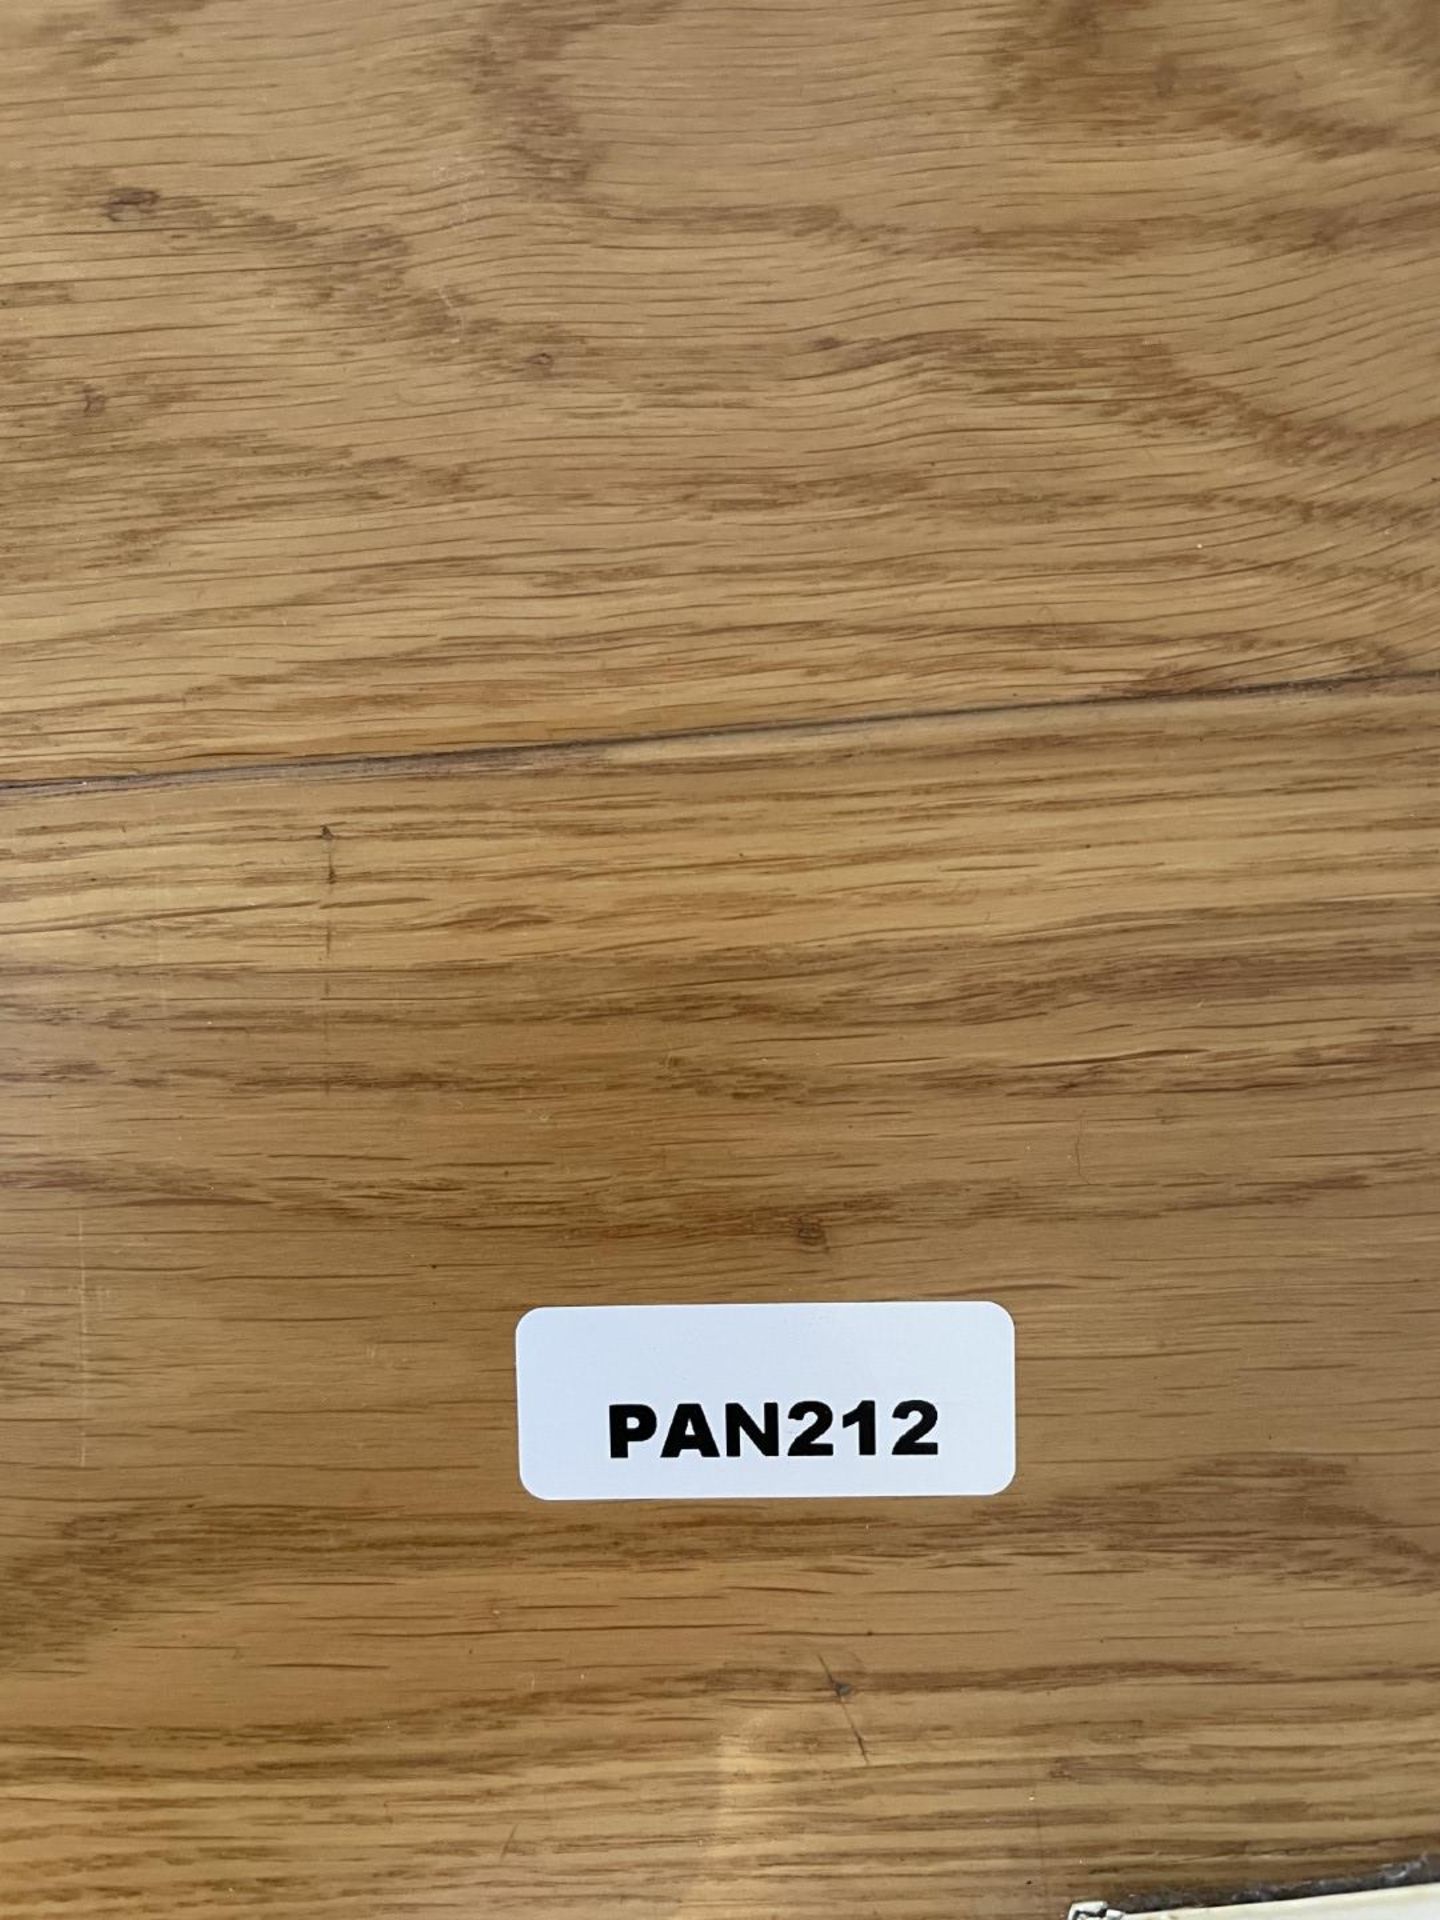 Fine Oak Hardwood Hallway Flooring - 6.3 x 1.2 Metres - Ref: PAN212 - CL896 - NO VAT - Bild 5 aus 12